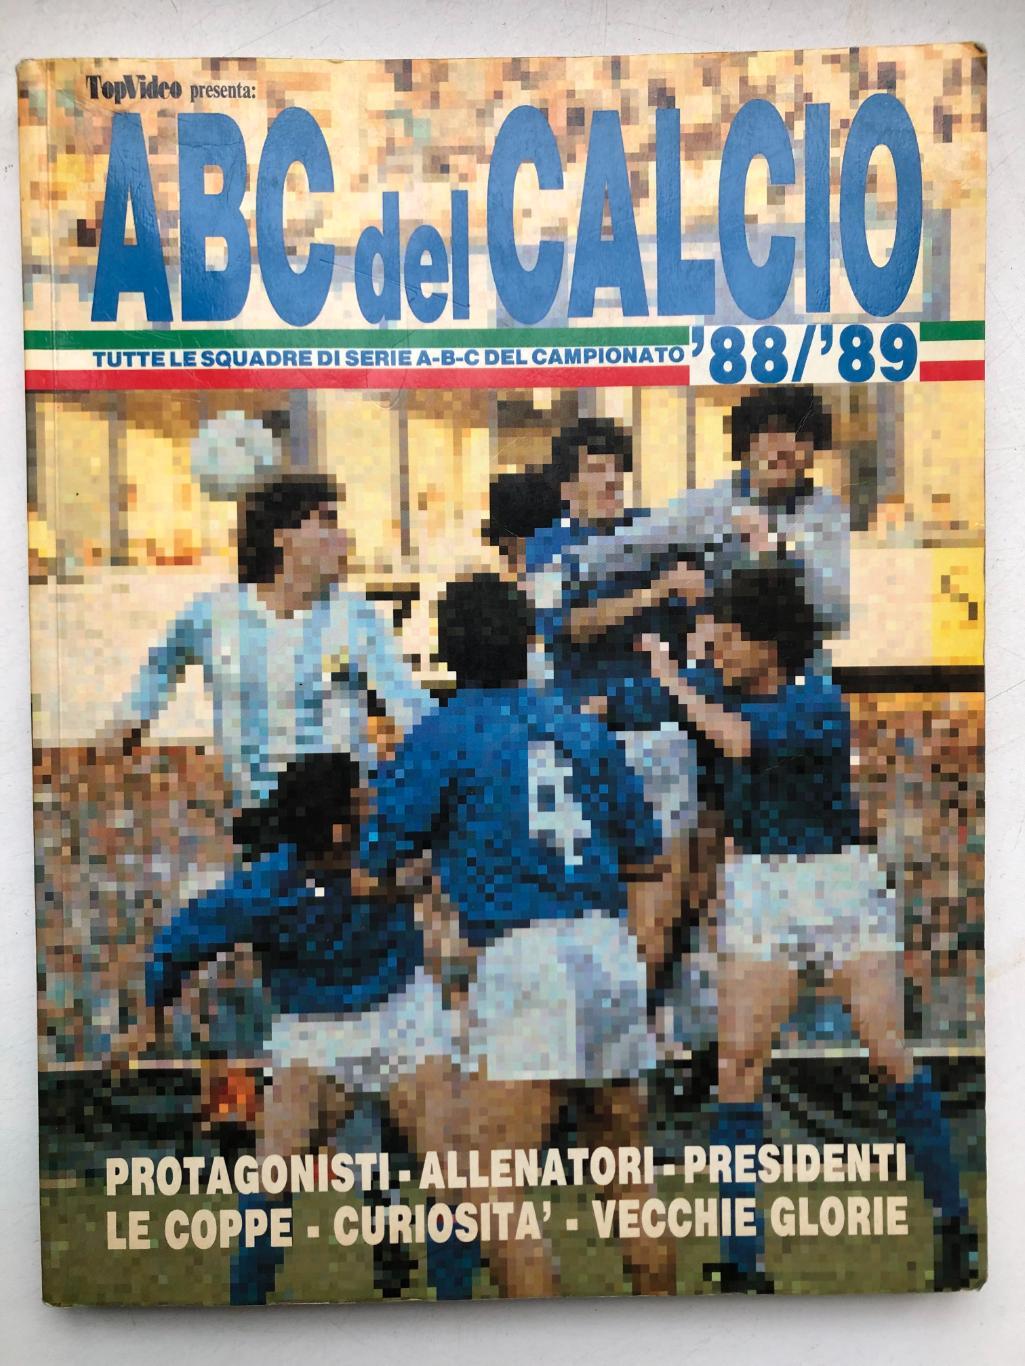 Италия ABC del CALCIO 1988/89 Все три дивизиона, фото команд и игроков, 322 стр.